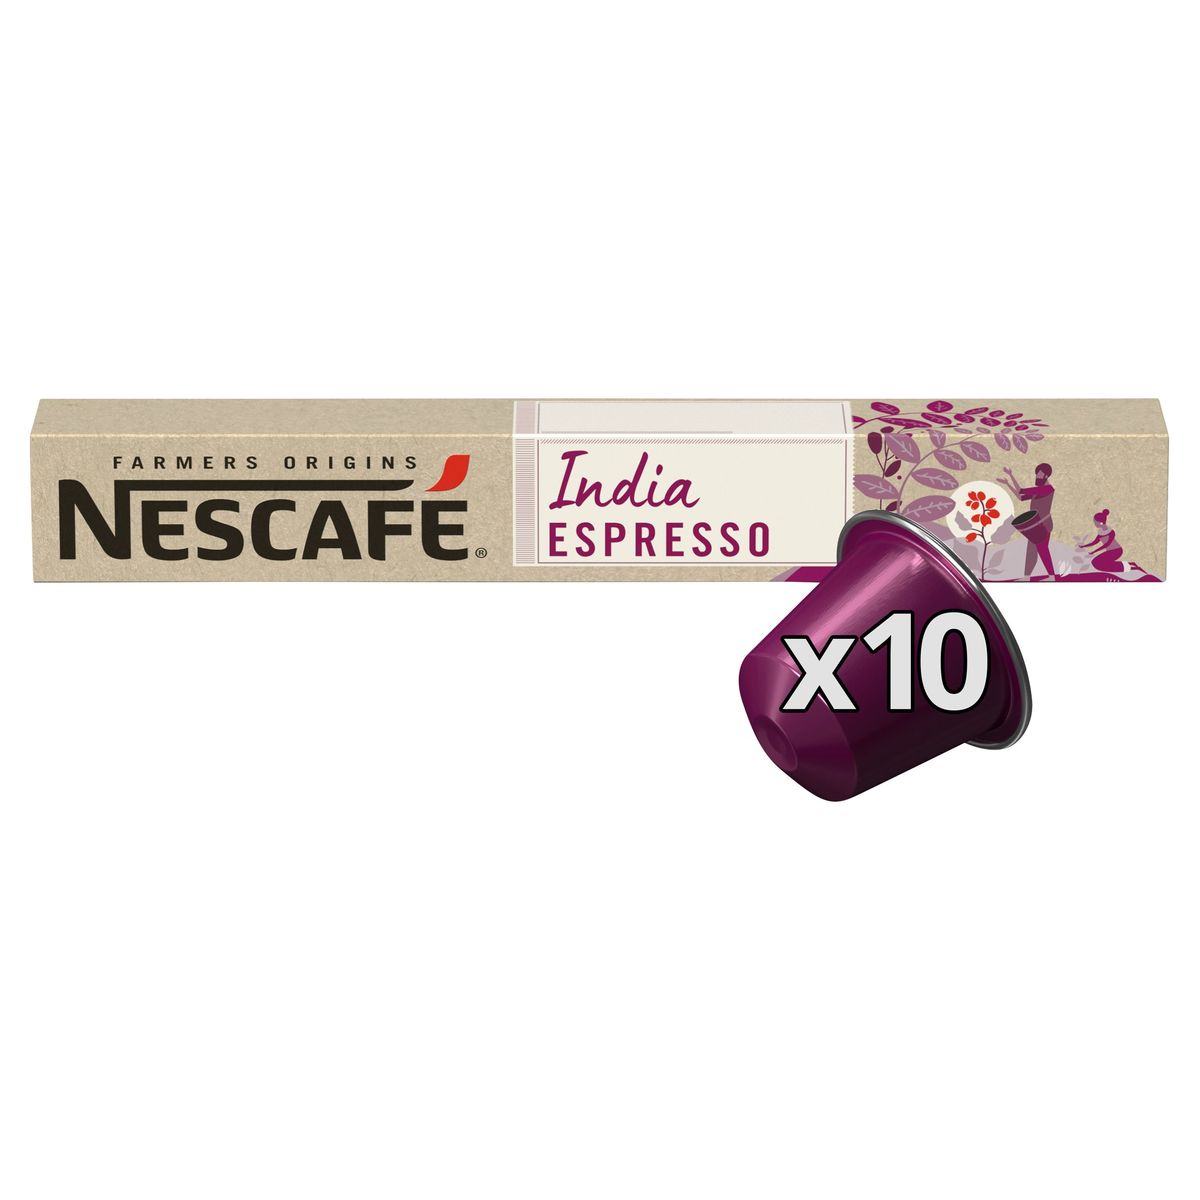 NESCAFÉ FARMERS ORIGINS Café INDIA Espresso 10 Capsules